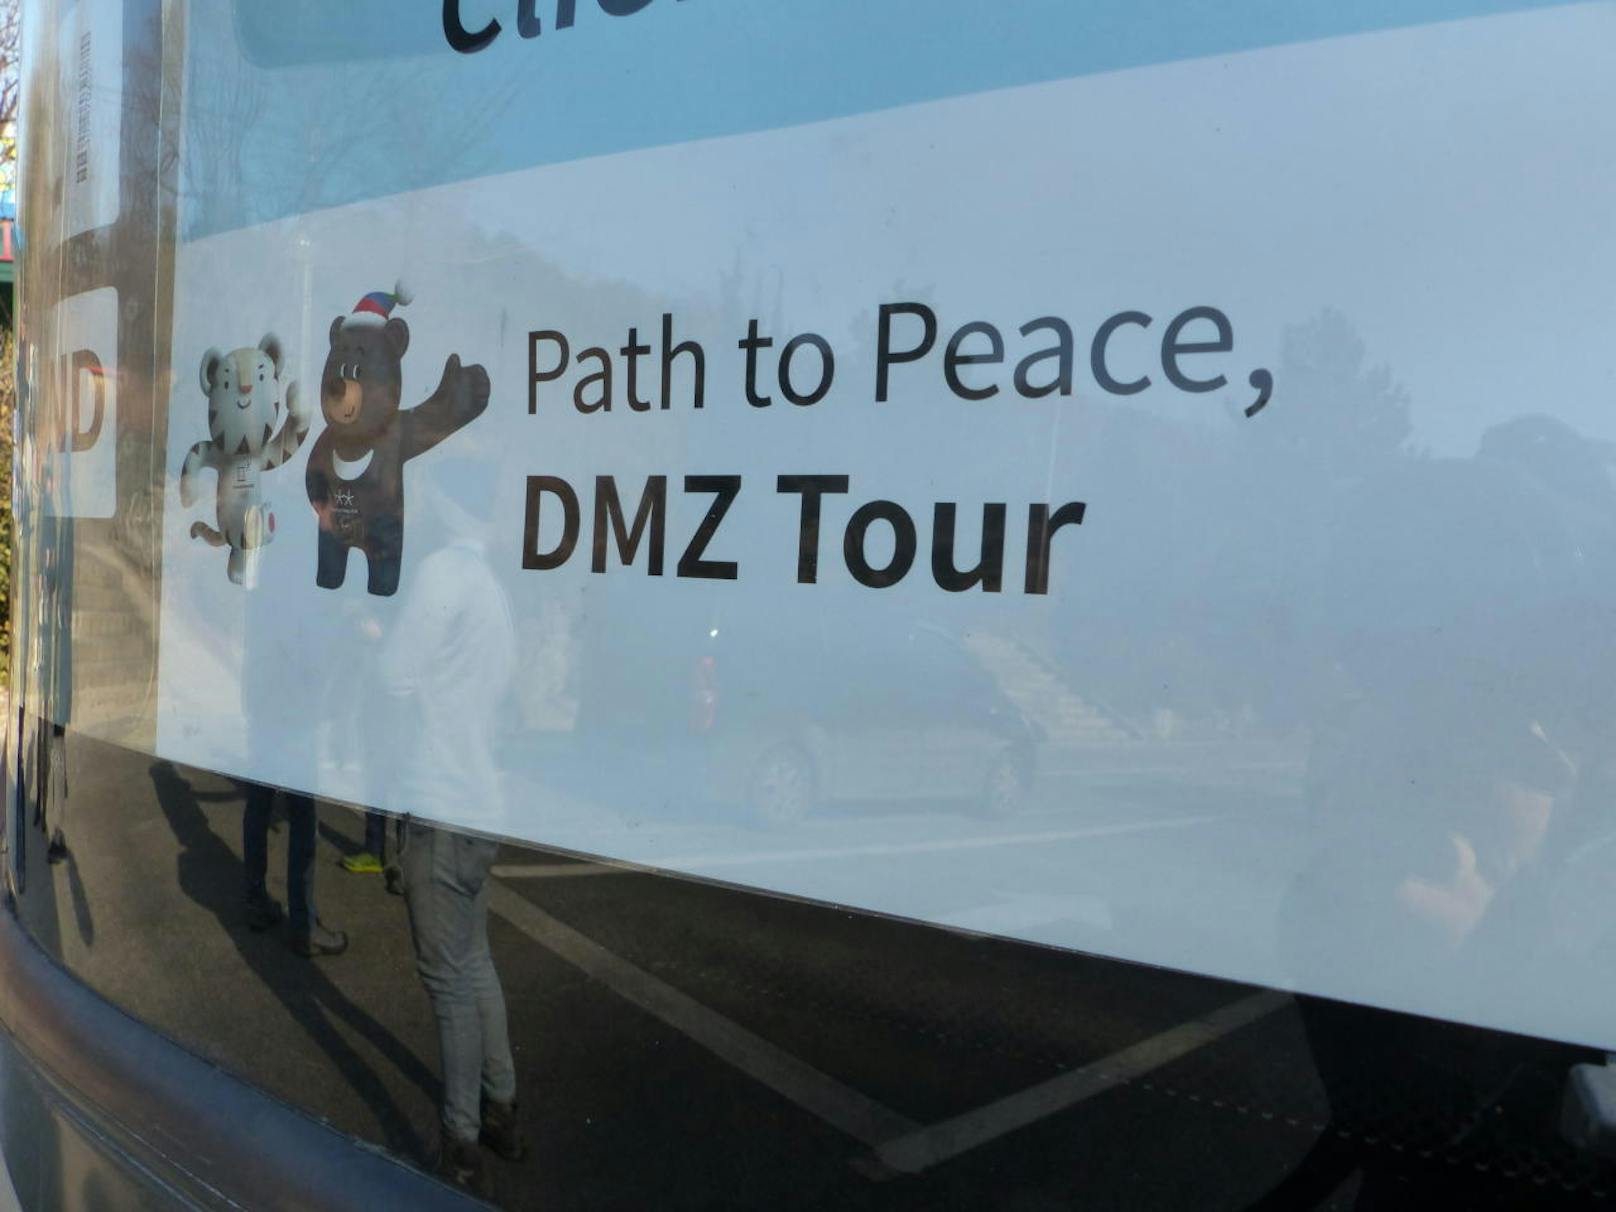 Die Tour wird "Pfad zum Frieden" genannt. Die Wirklichkeit ist vom dauerhaften Frieden aber weit entfernt.